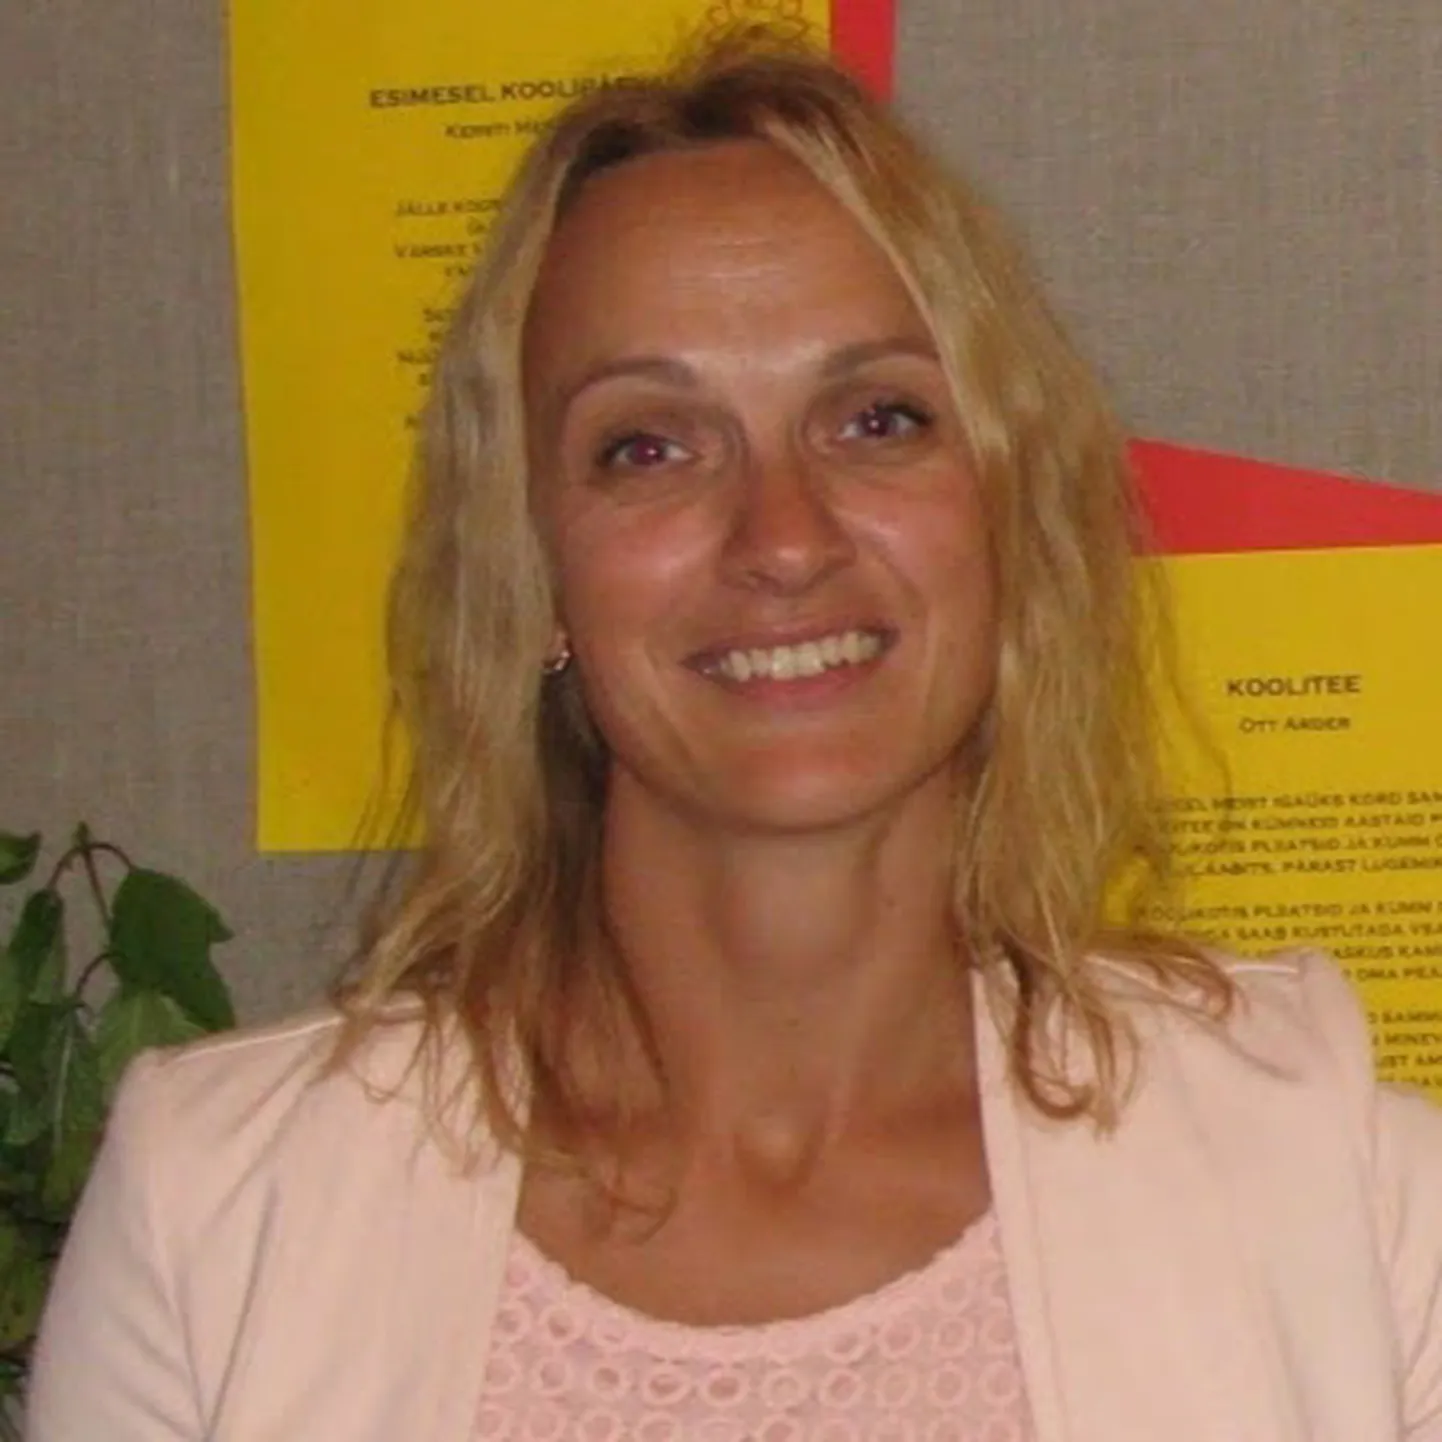 ELKS-i Pandivere osakonna juhatajaks valiti Eve Kangur.